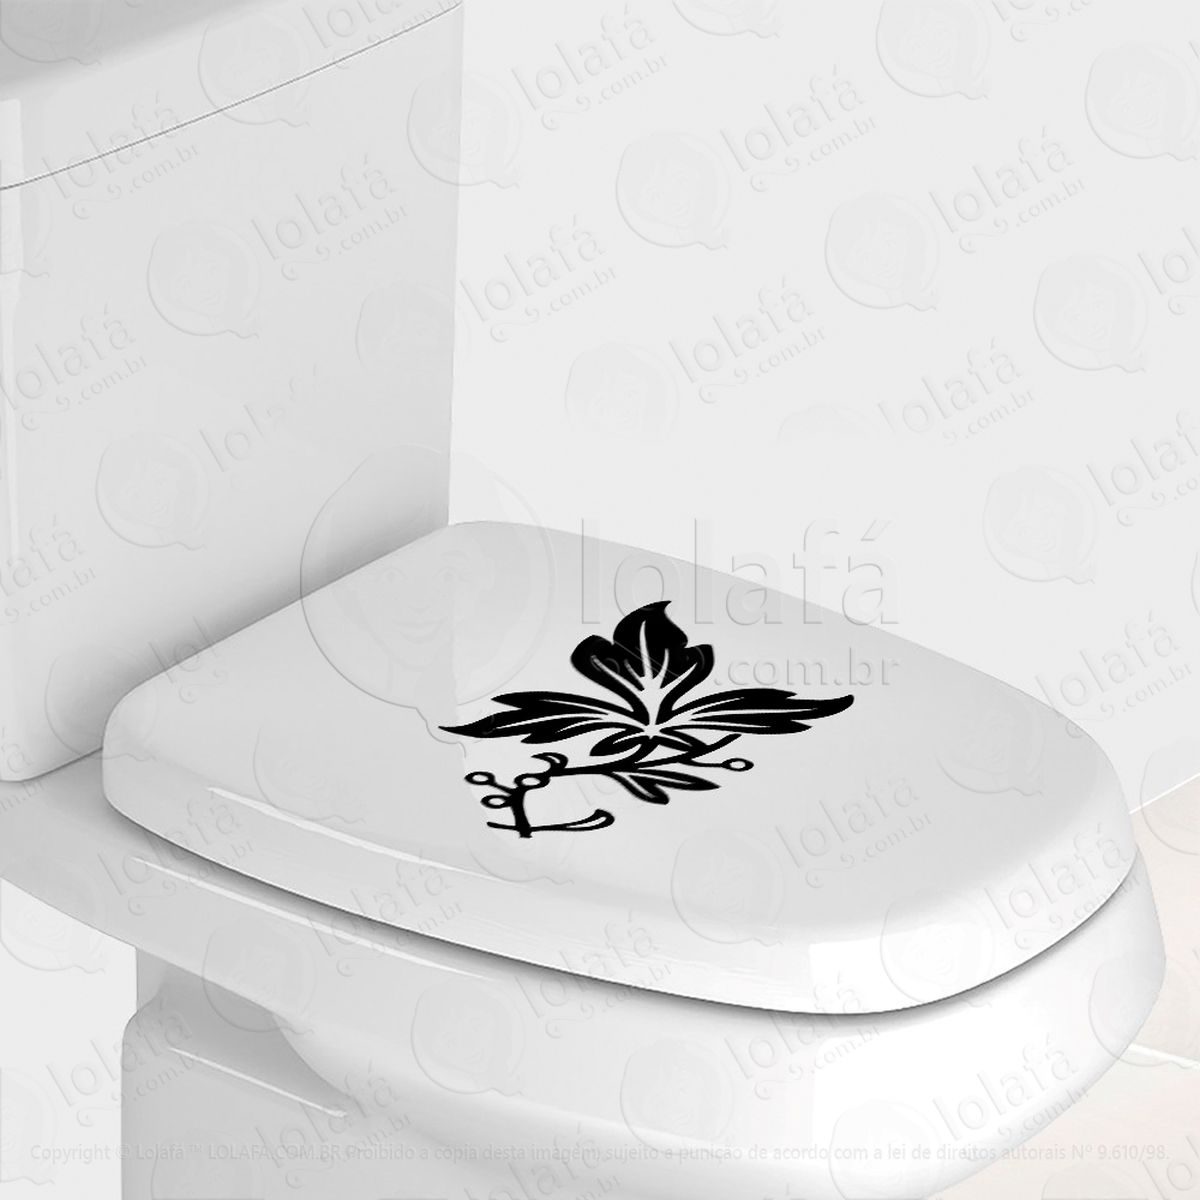 flor adesivo para vaso sanitário e privada - mod:100